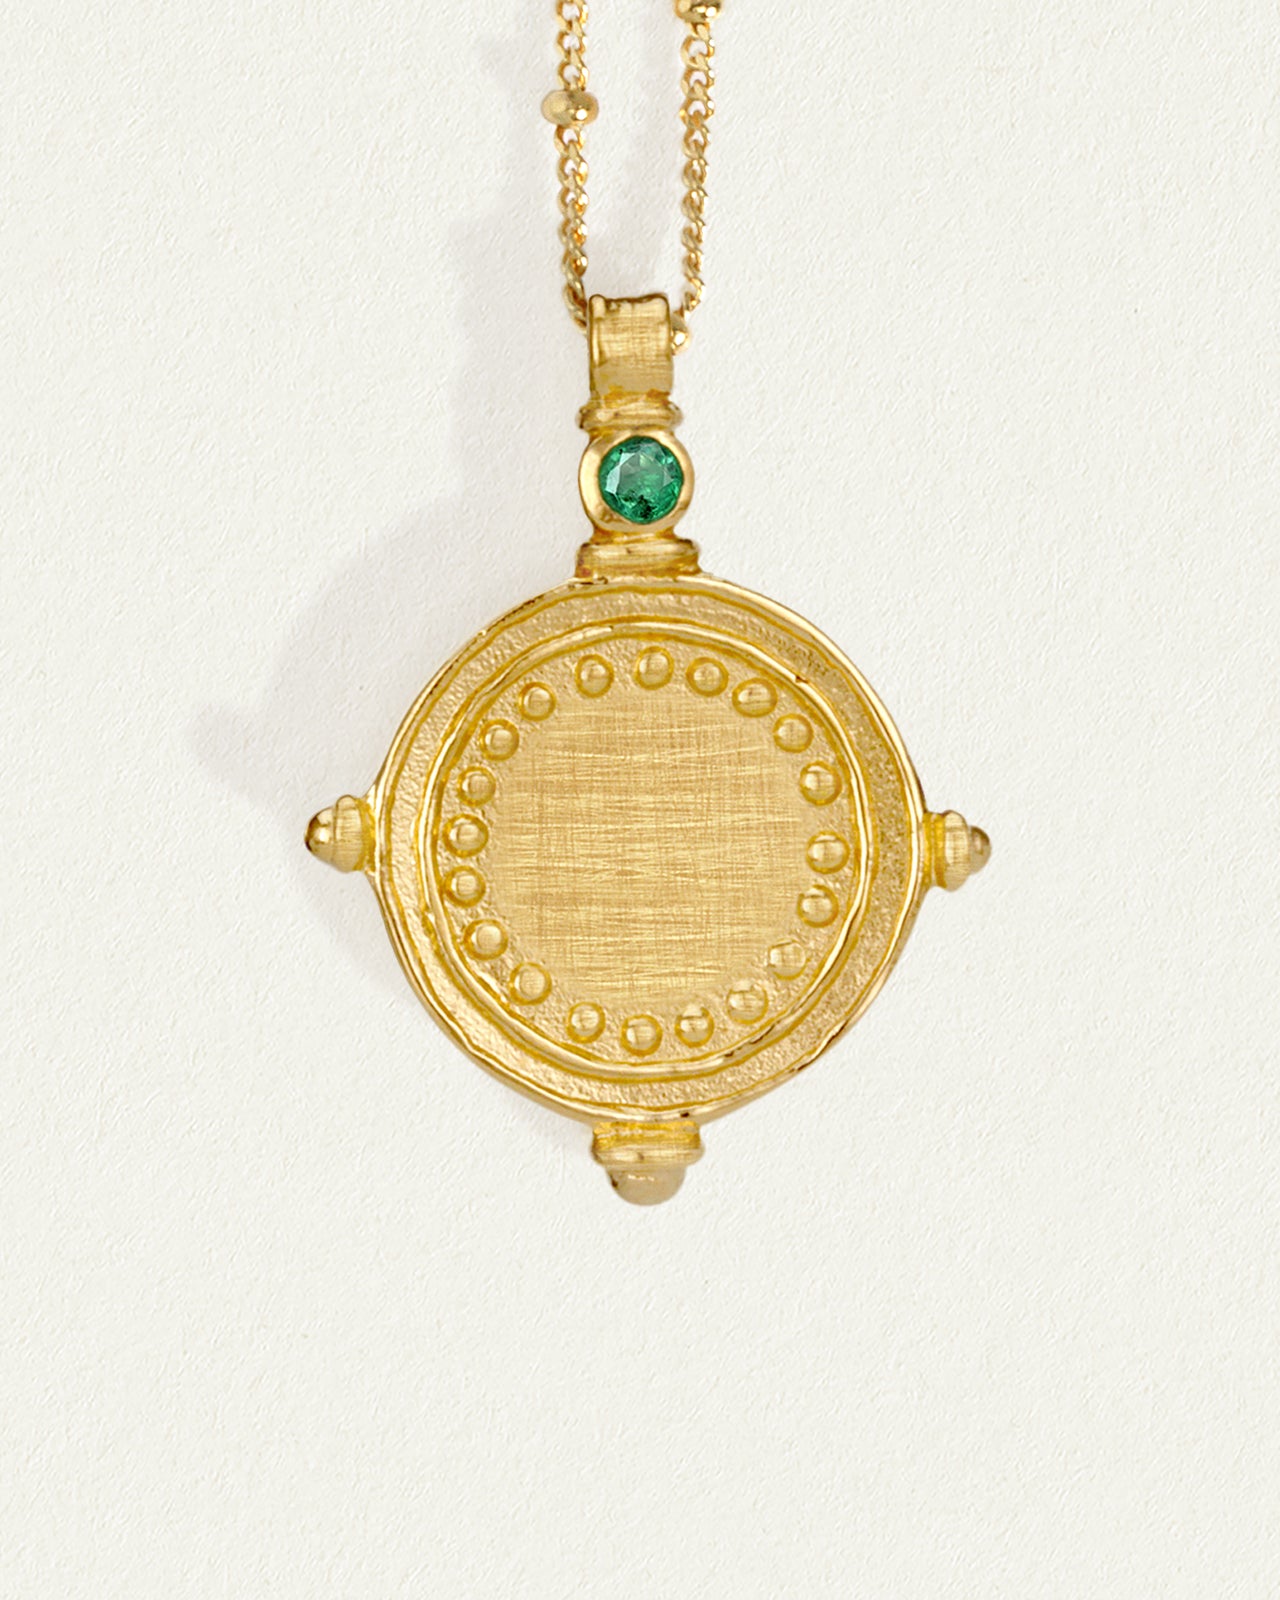 Temple Long Necklace design online catalog